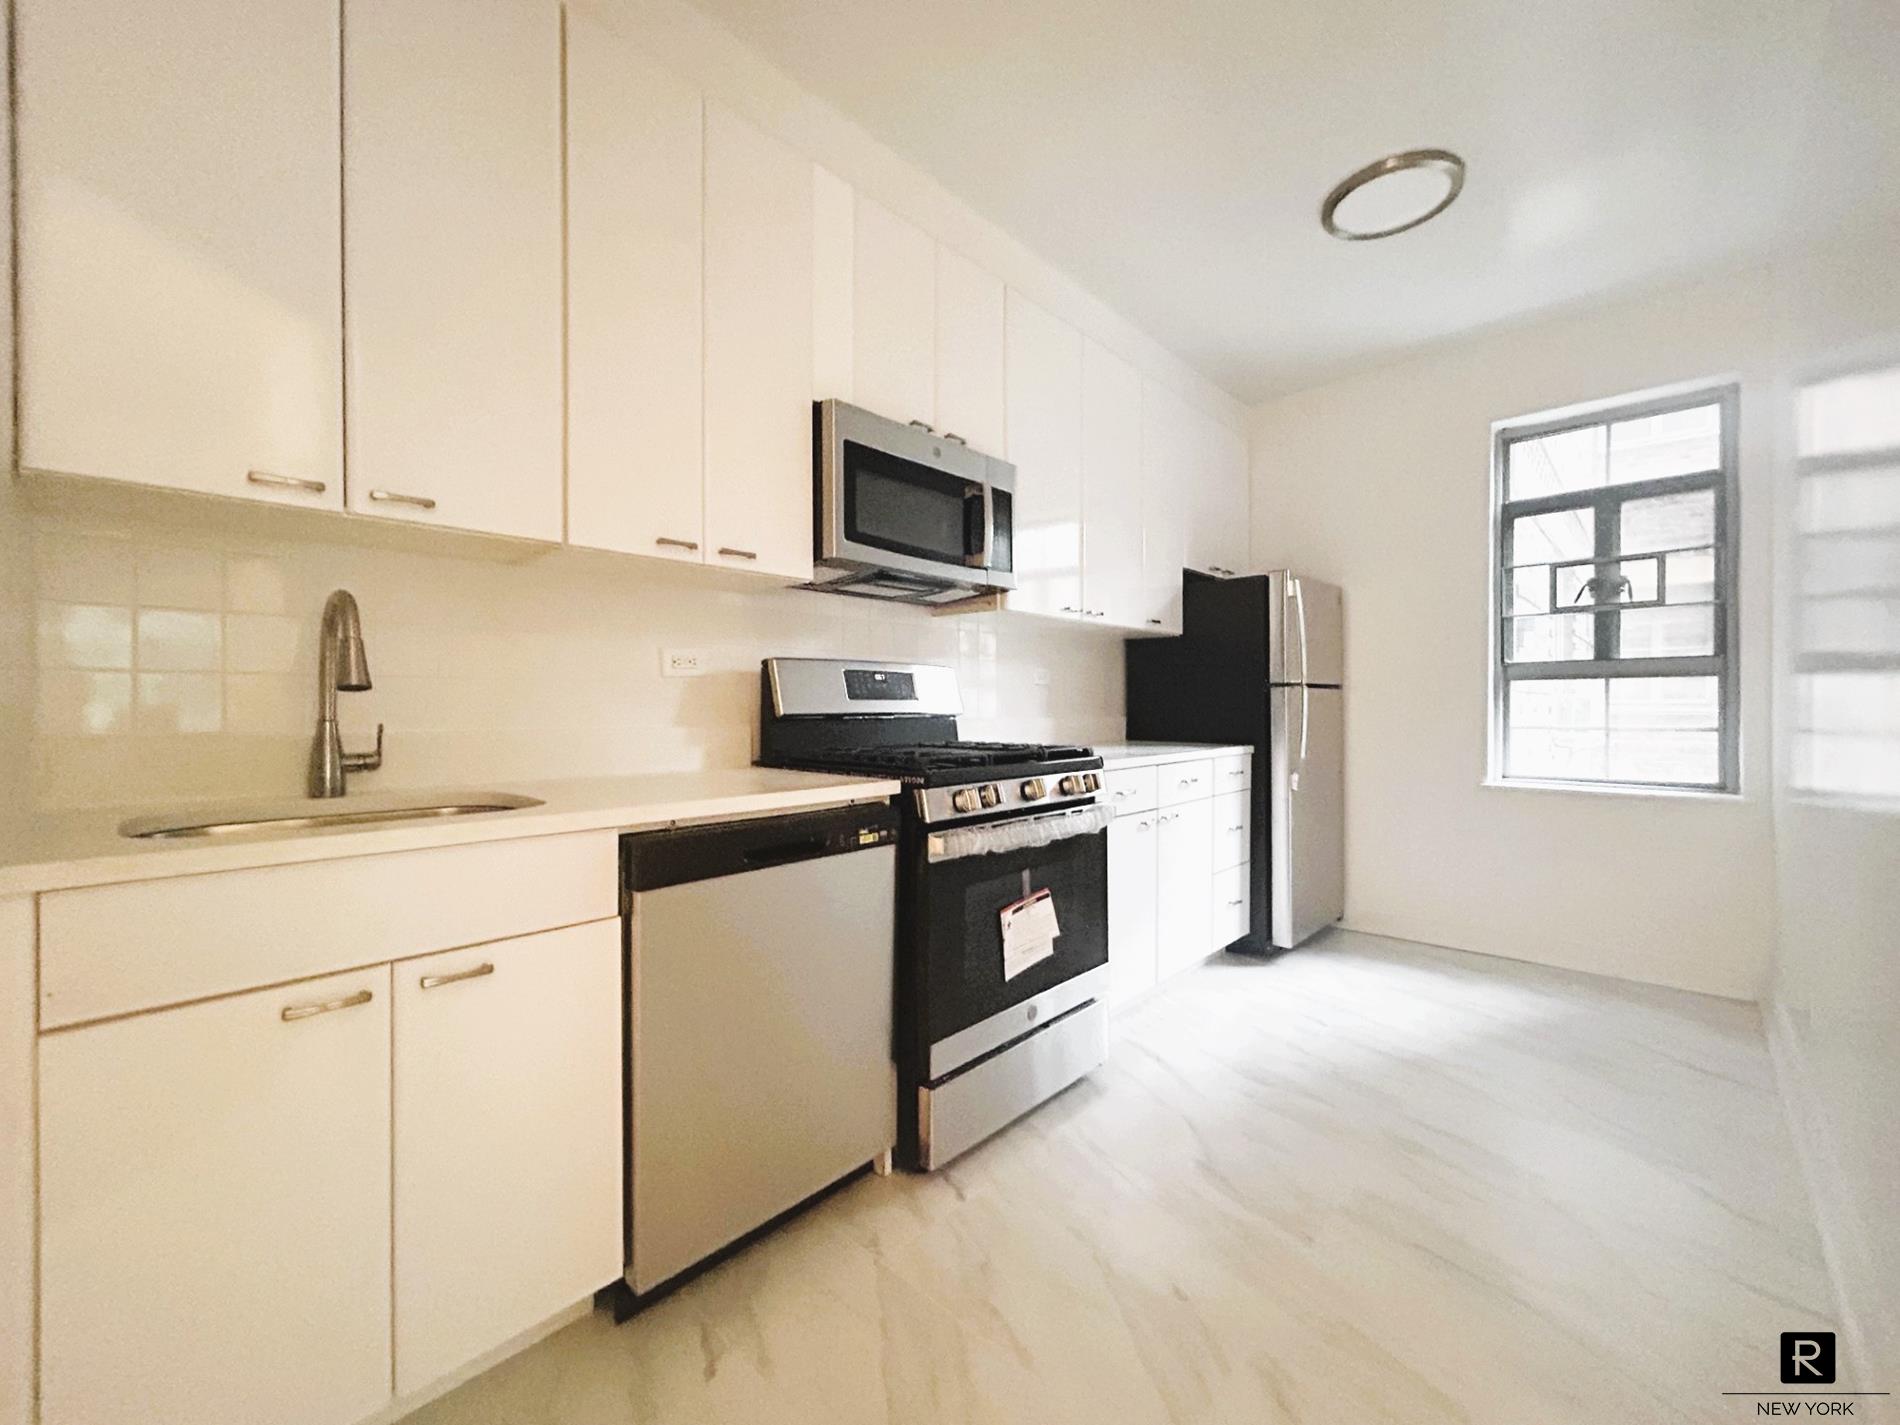 150 Greenway Terrace, Forest Hills, Queens, New York - 2 Bedrooms  
1 Bathrooms  
5 Rooms - 